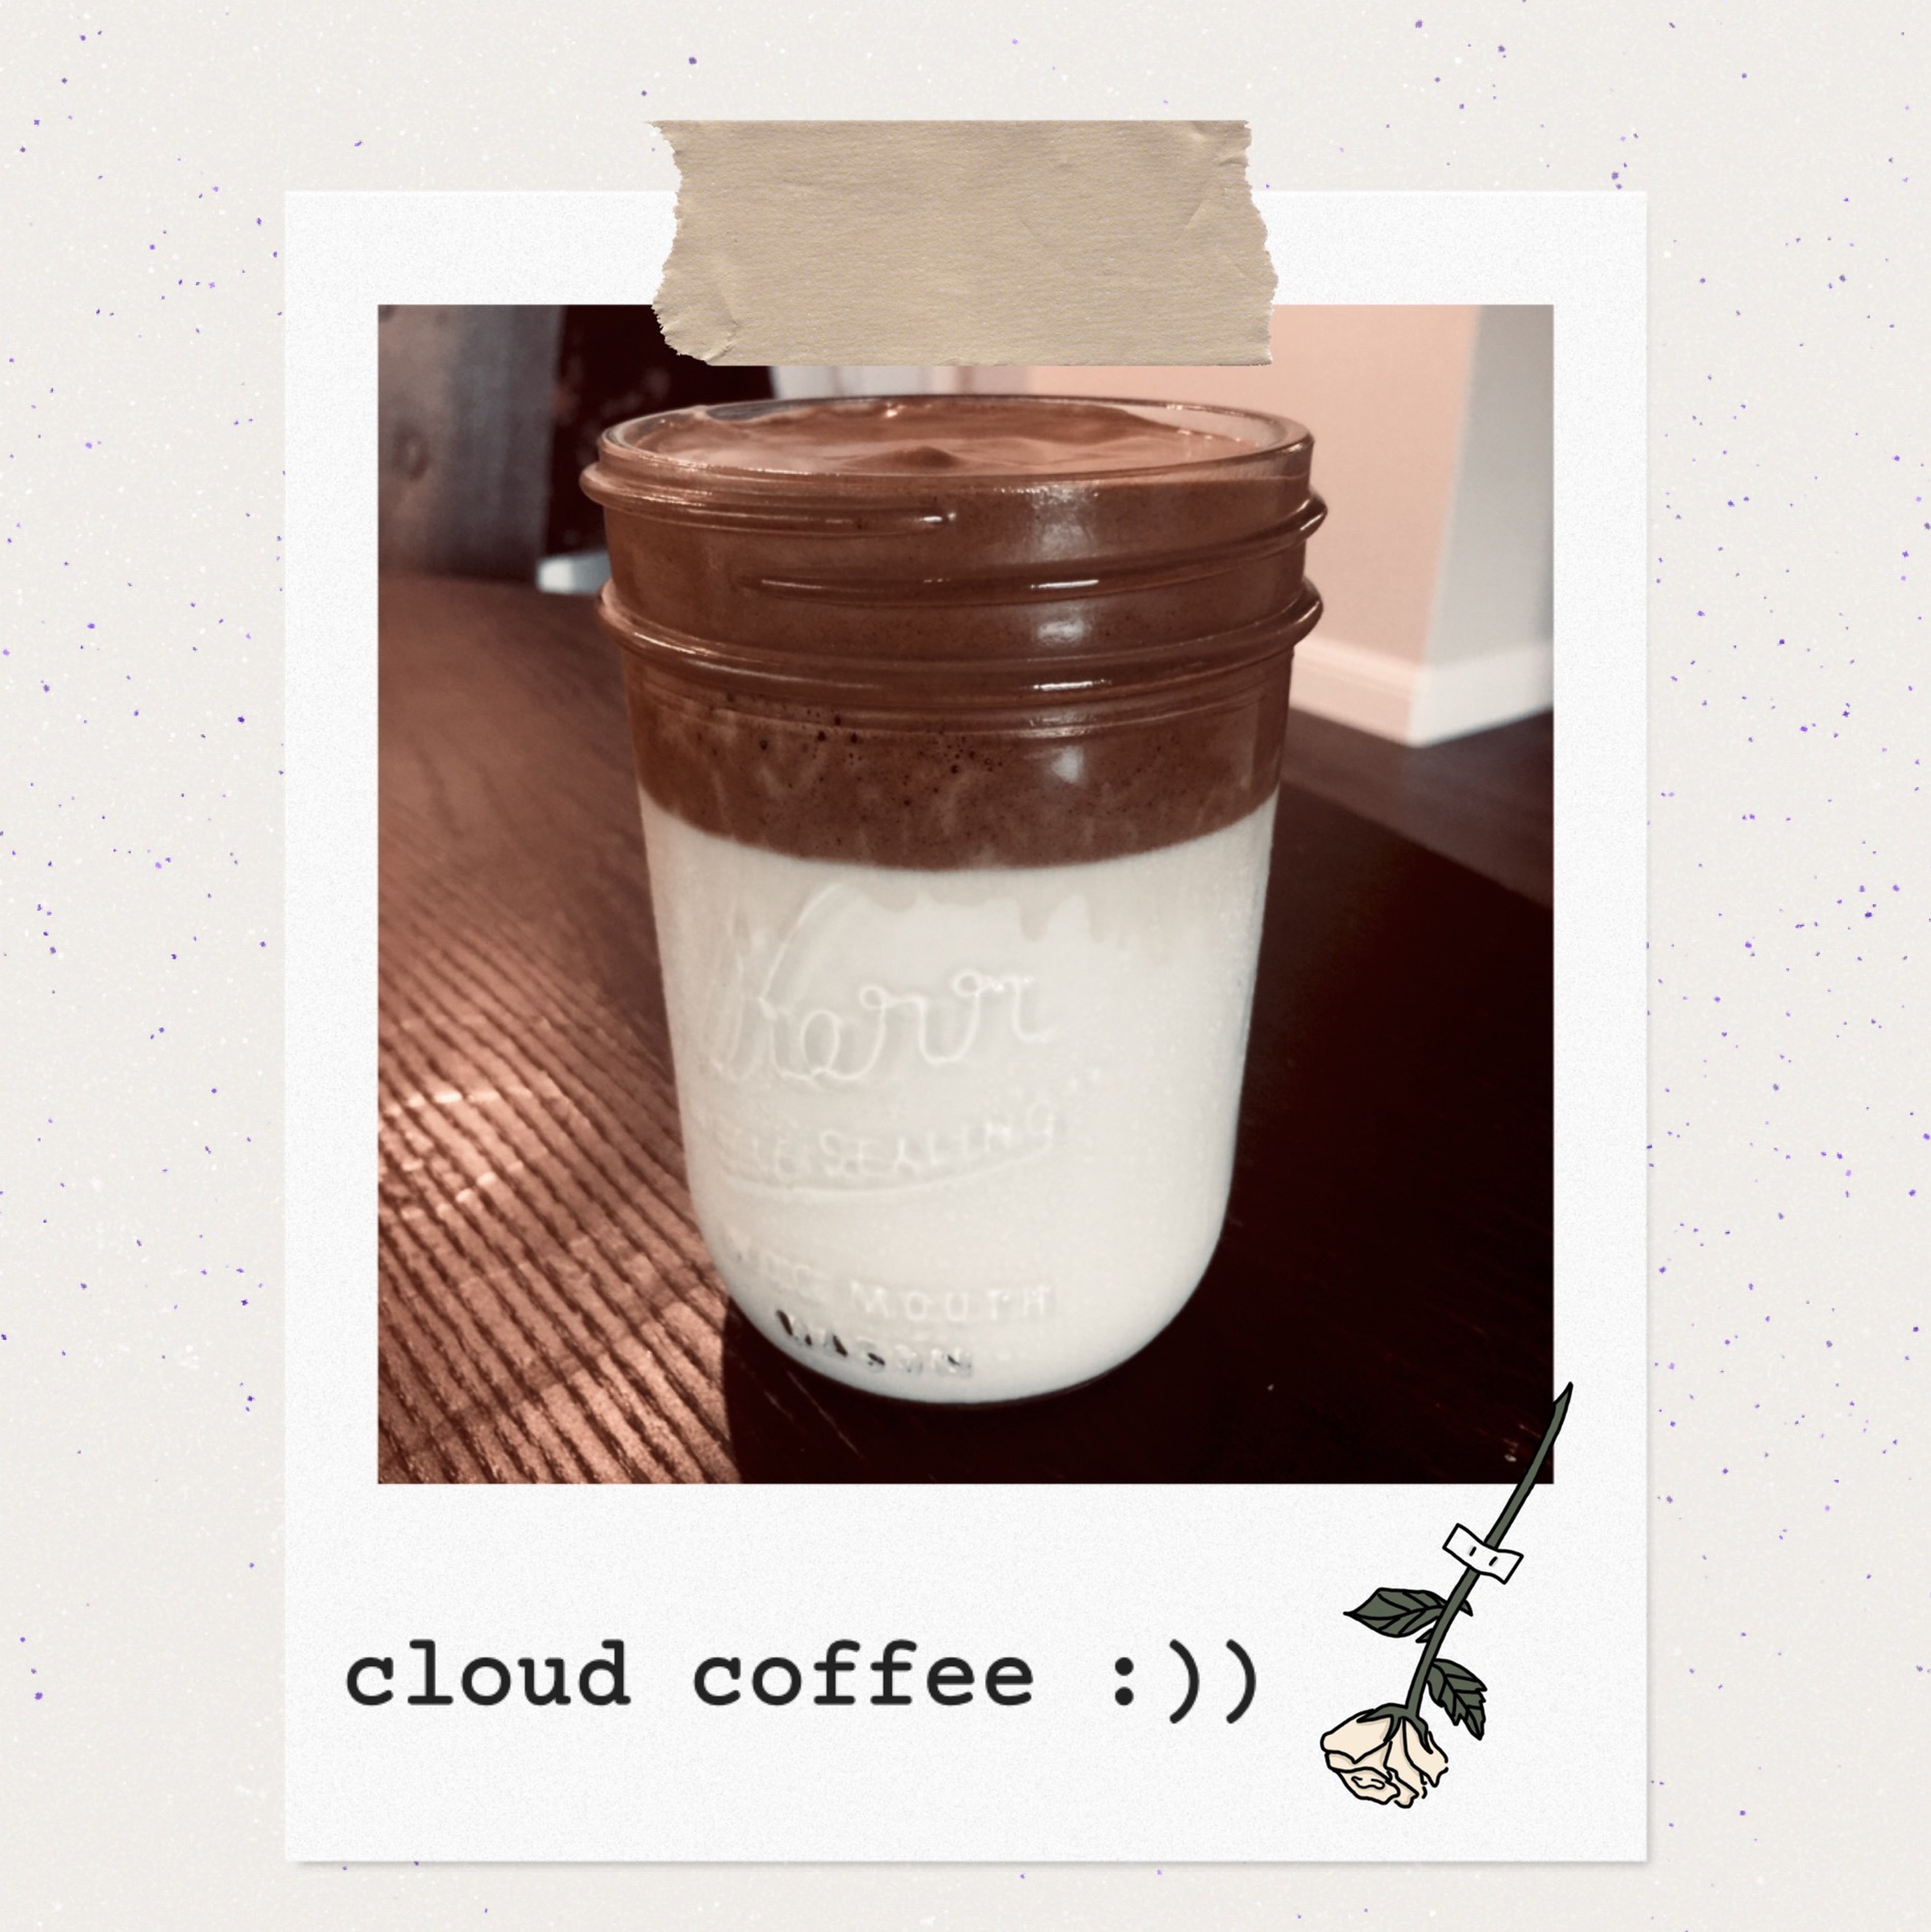 cloud coffee :))